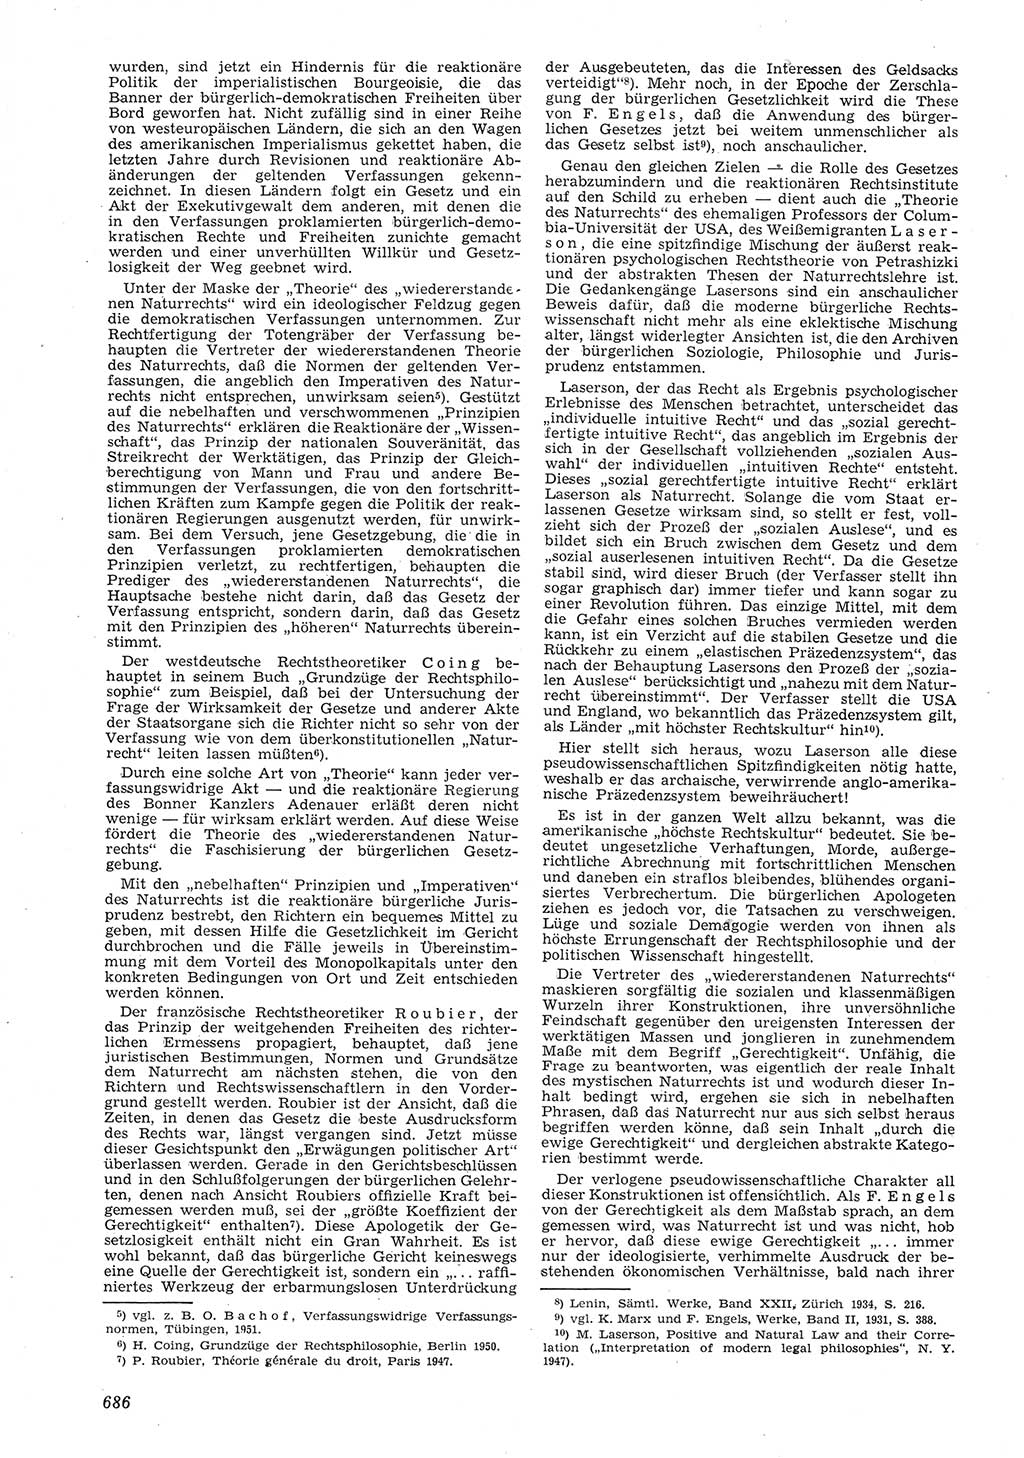 Neue Justiz (NJ), Zeitschrift für Recht und Rechtswissenschaft [Deutsche Demokratische Republik (DDR)], 8. Jahrgang 1954, Seite 686 (NJ DDR 1954, S. 686)